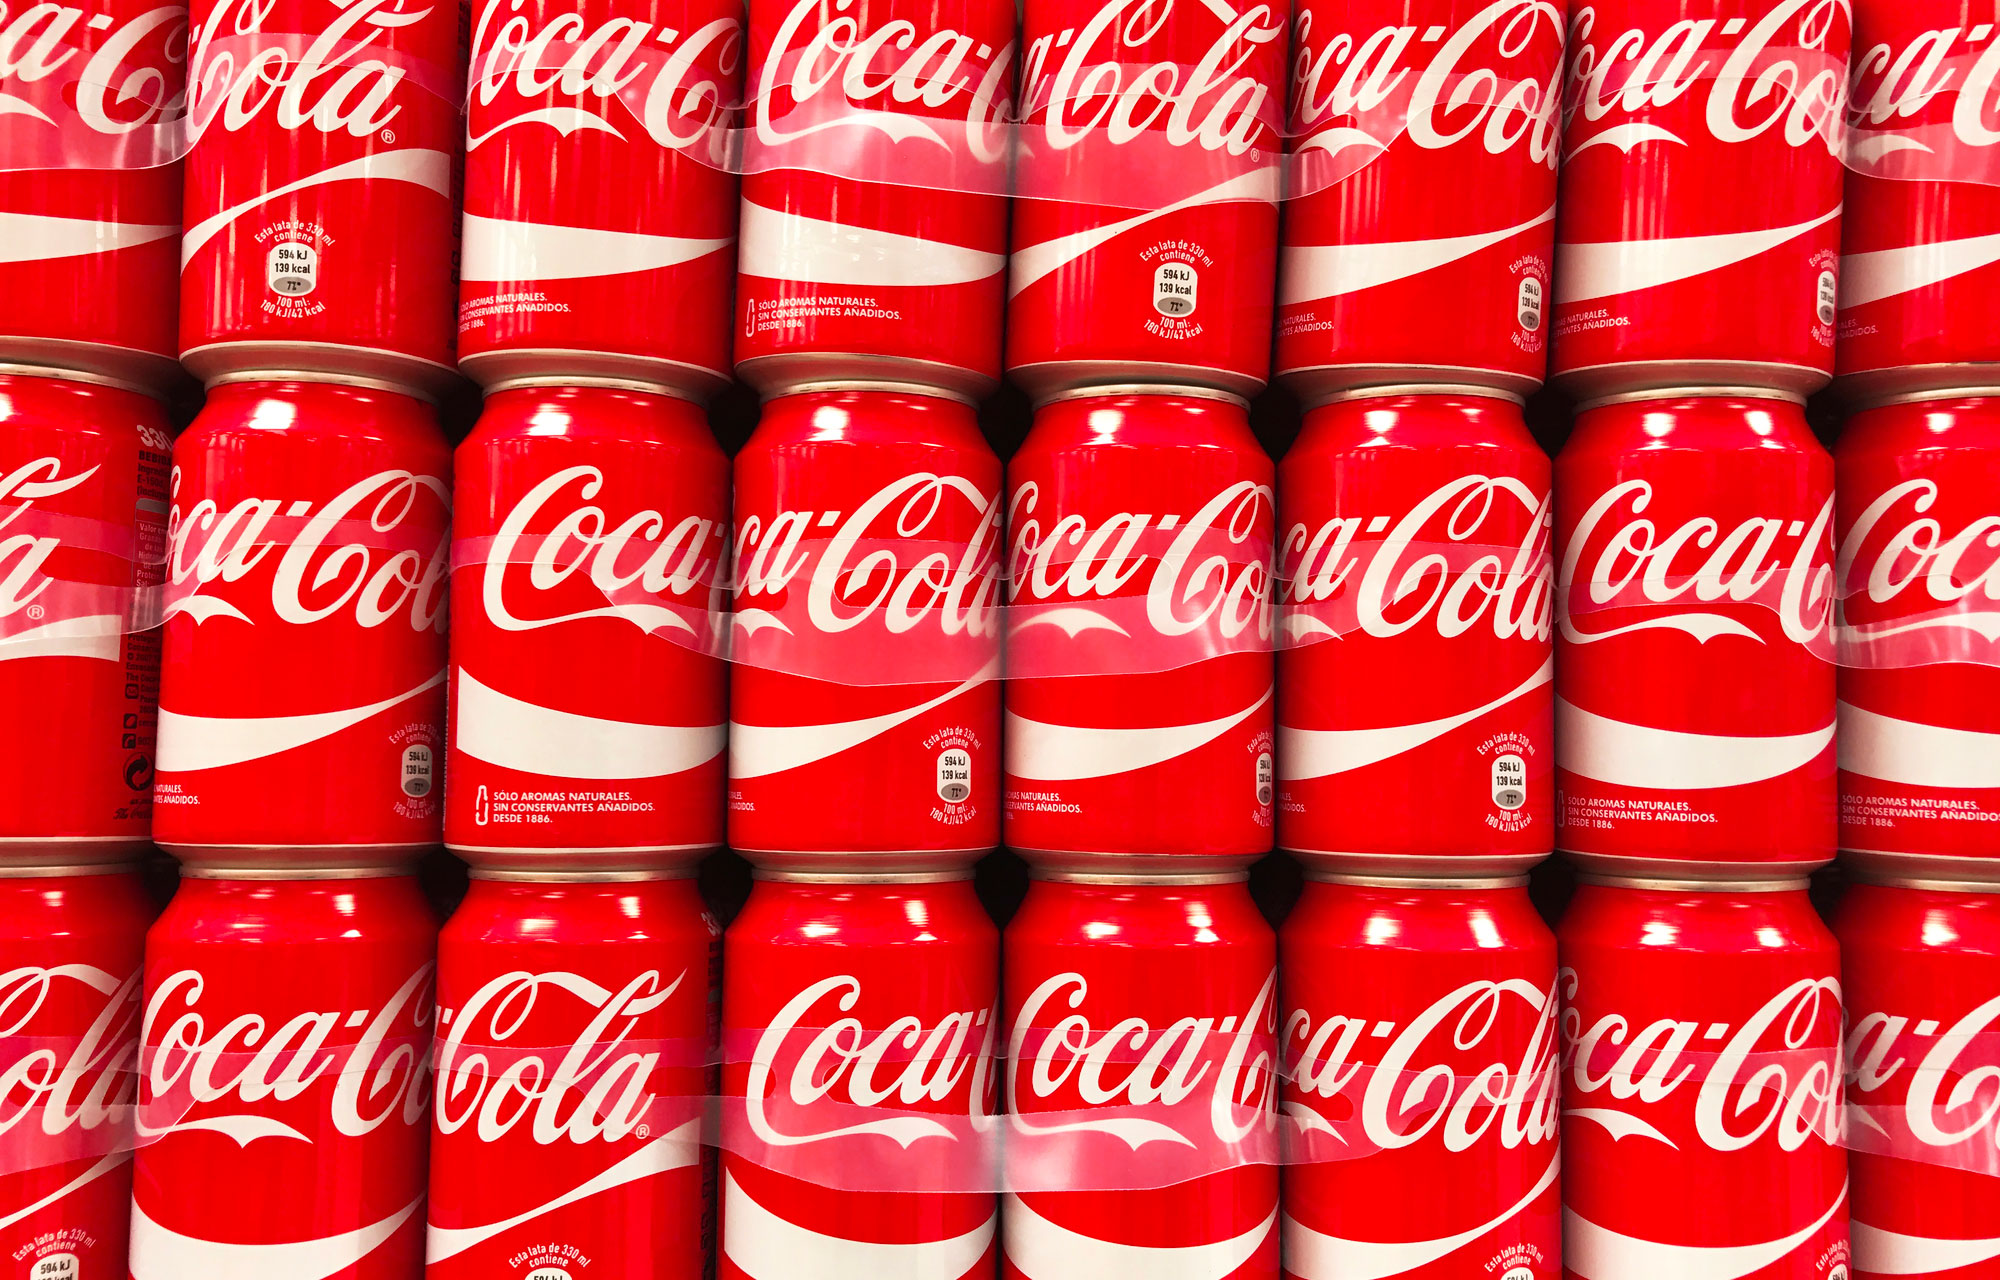 Coca-Cola Explores Entering Cannabis Market With 'Wellness Beverage